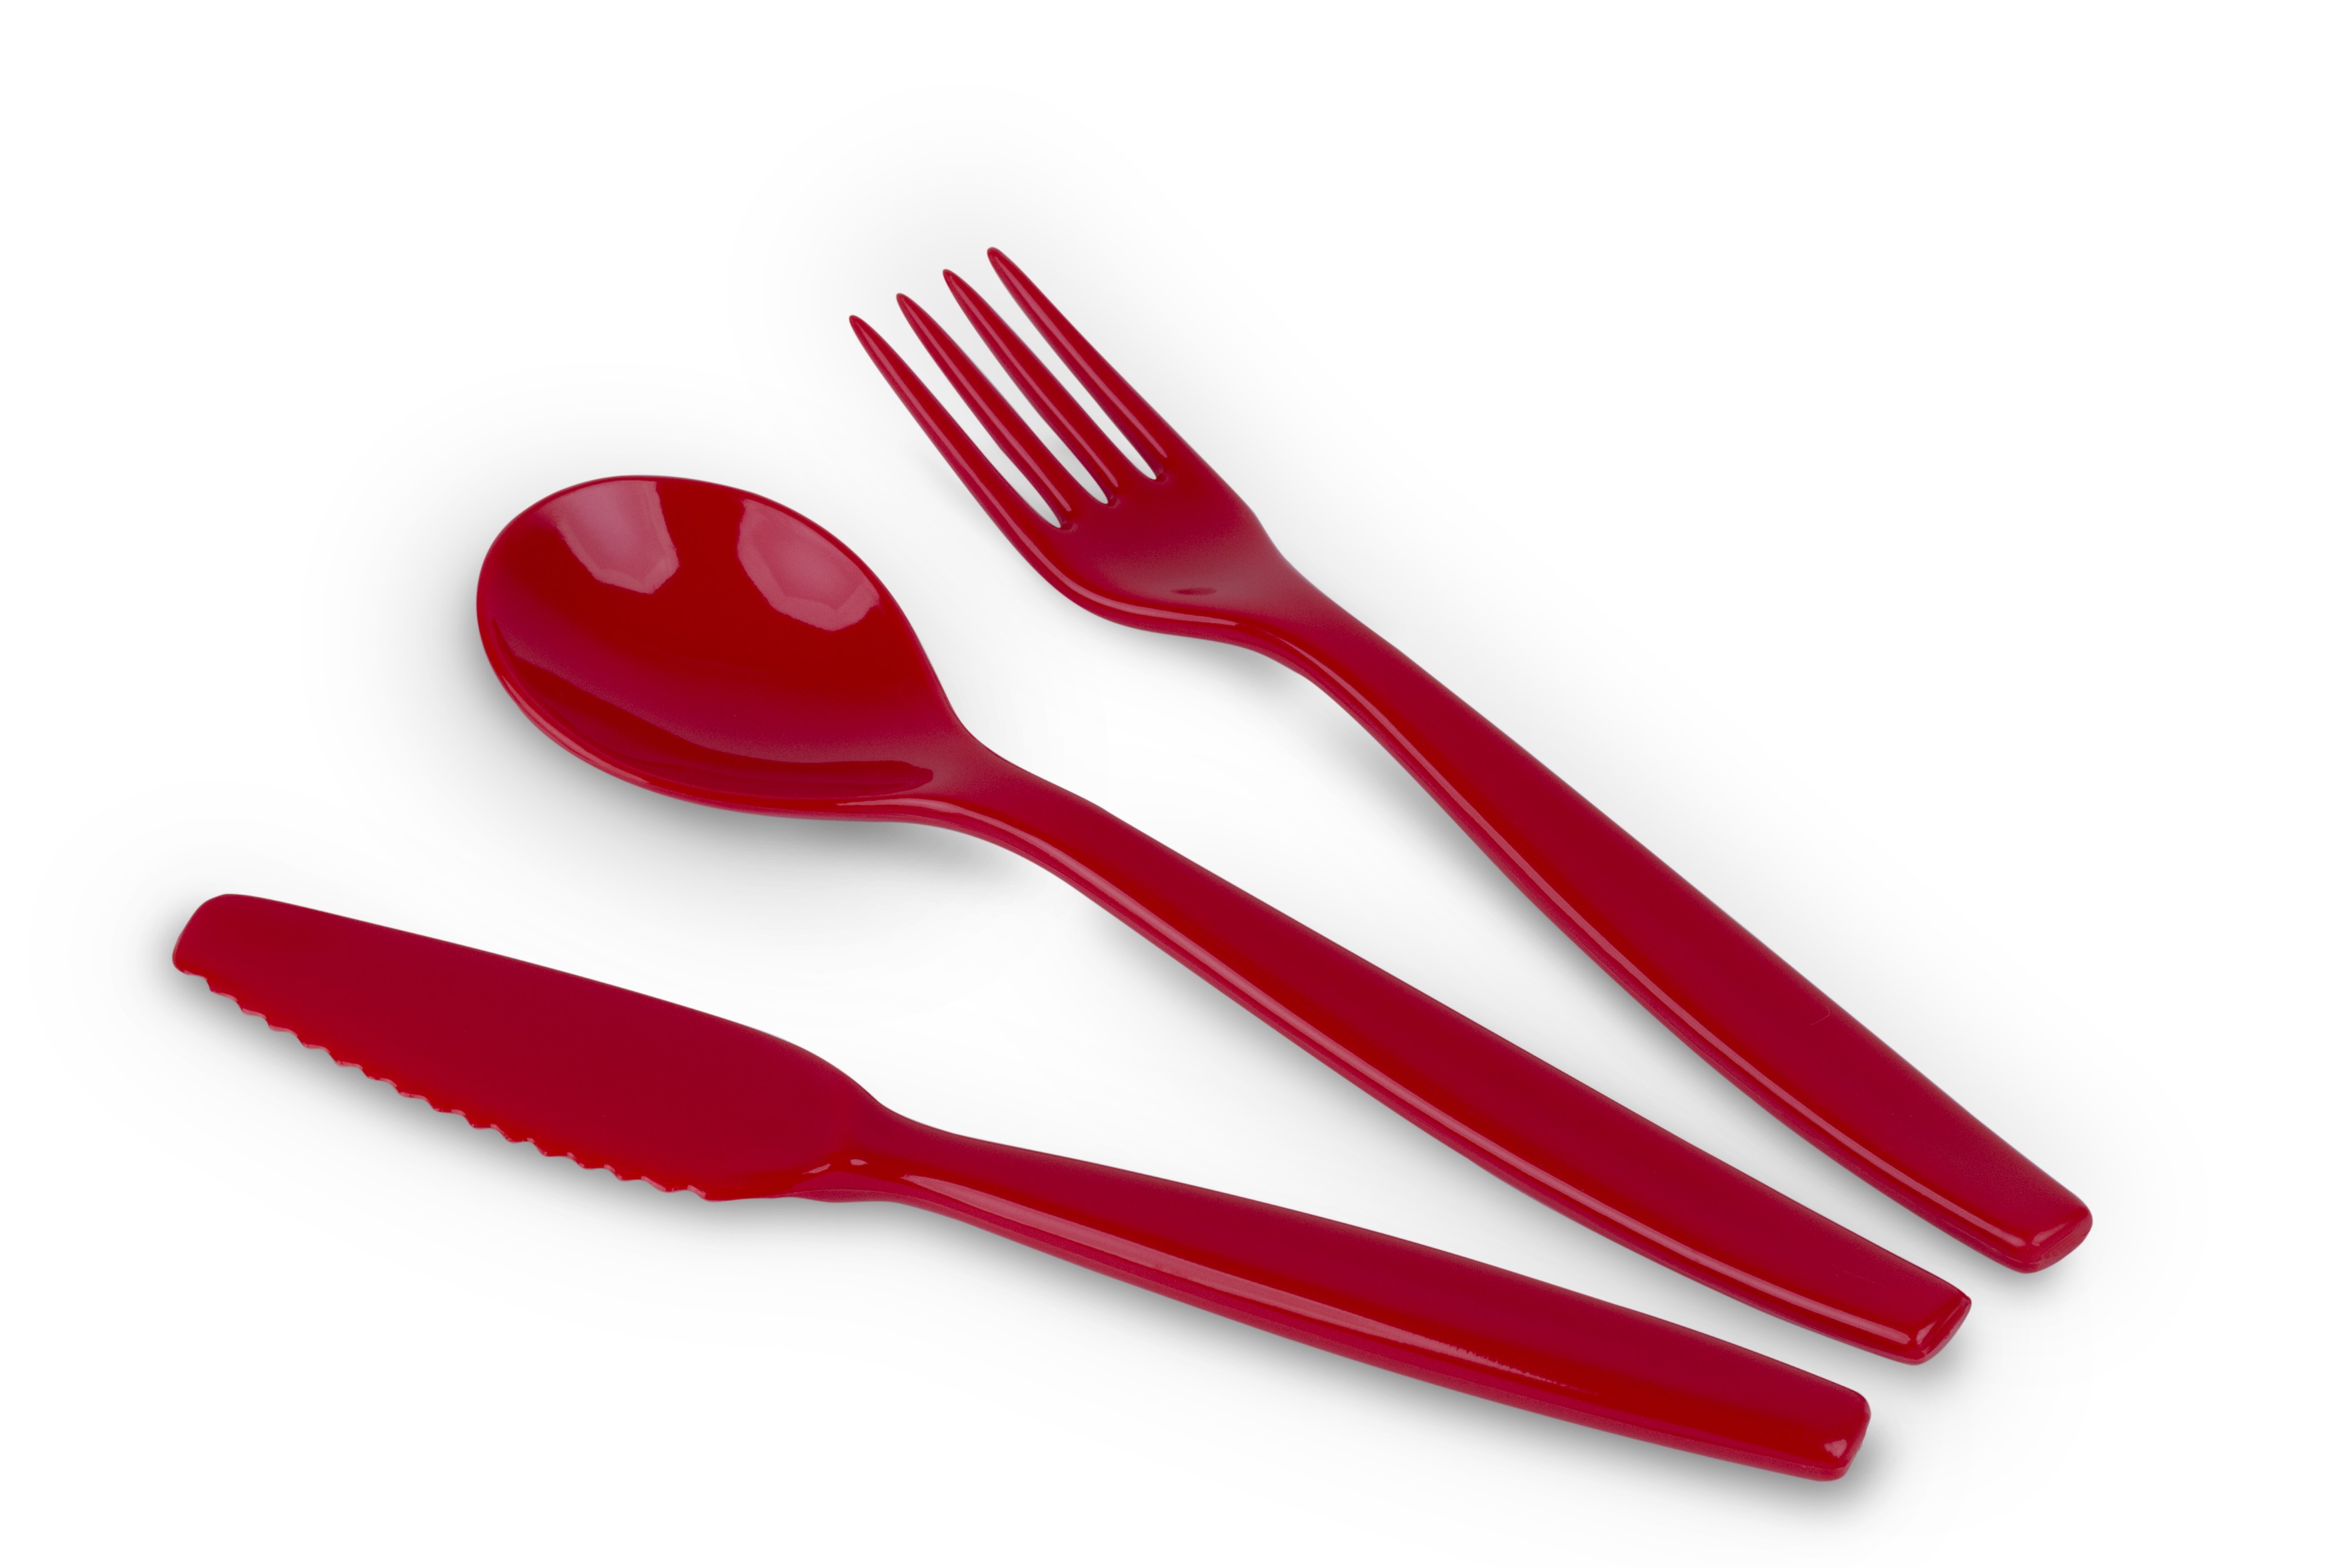 Kinderzeug Besteck-Set BRISE, rot 3-teilig: Messer, Gabel, Löffel, spülmaschinen- geeignet. Länge ca. 16,5 cm, Gewicht 31 g